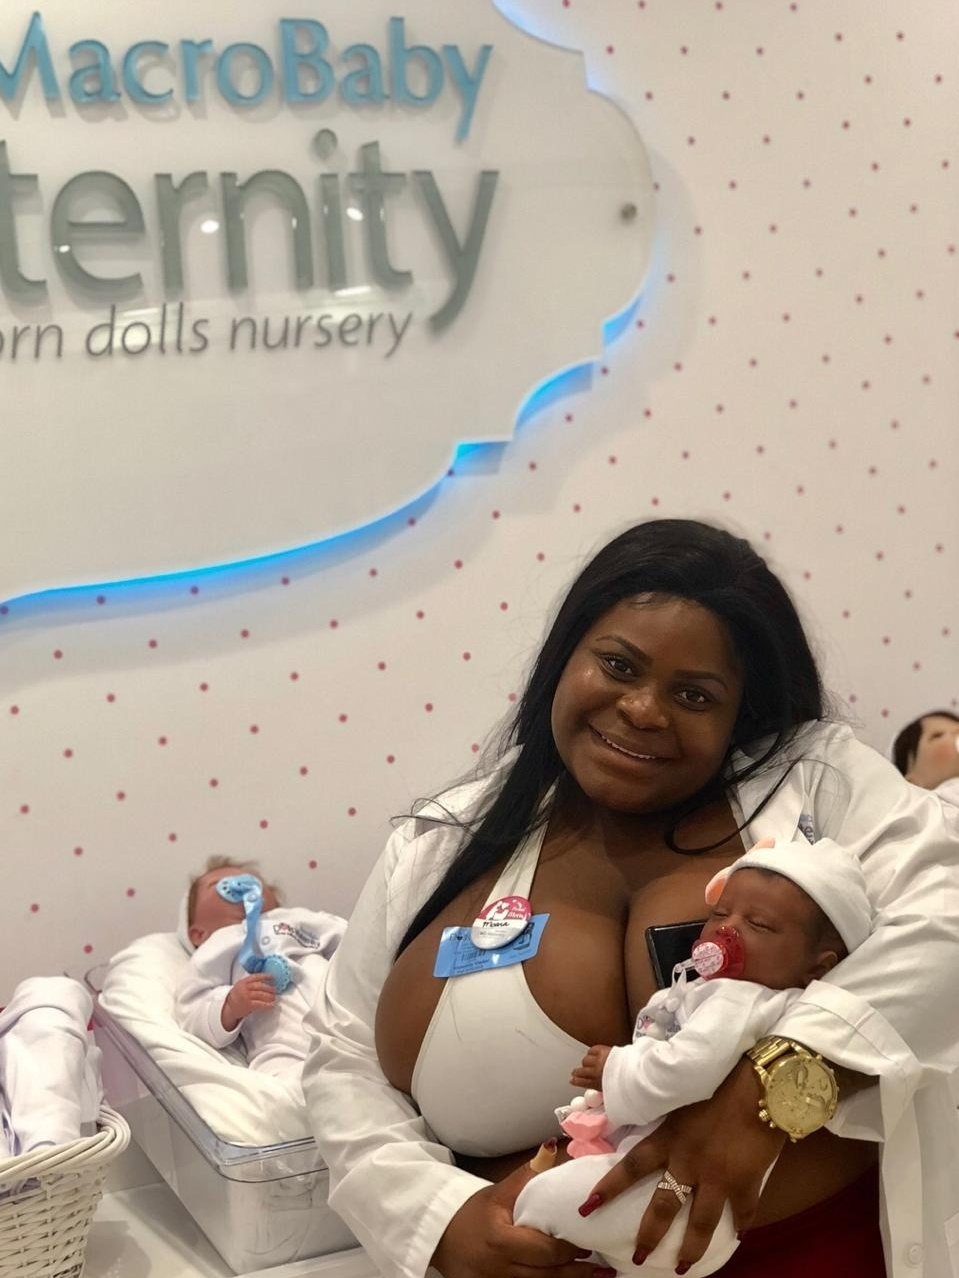 Primeira maternidade de bonecas reborn é inaugurada nos EUA - 20